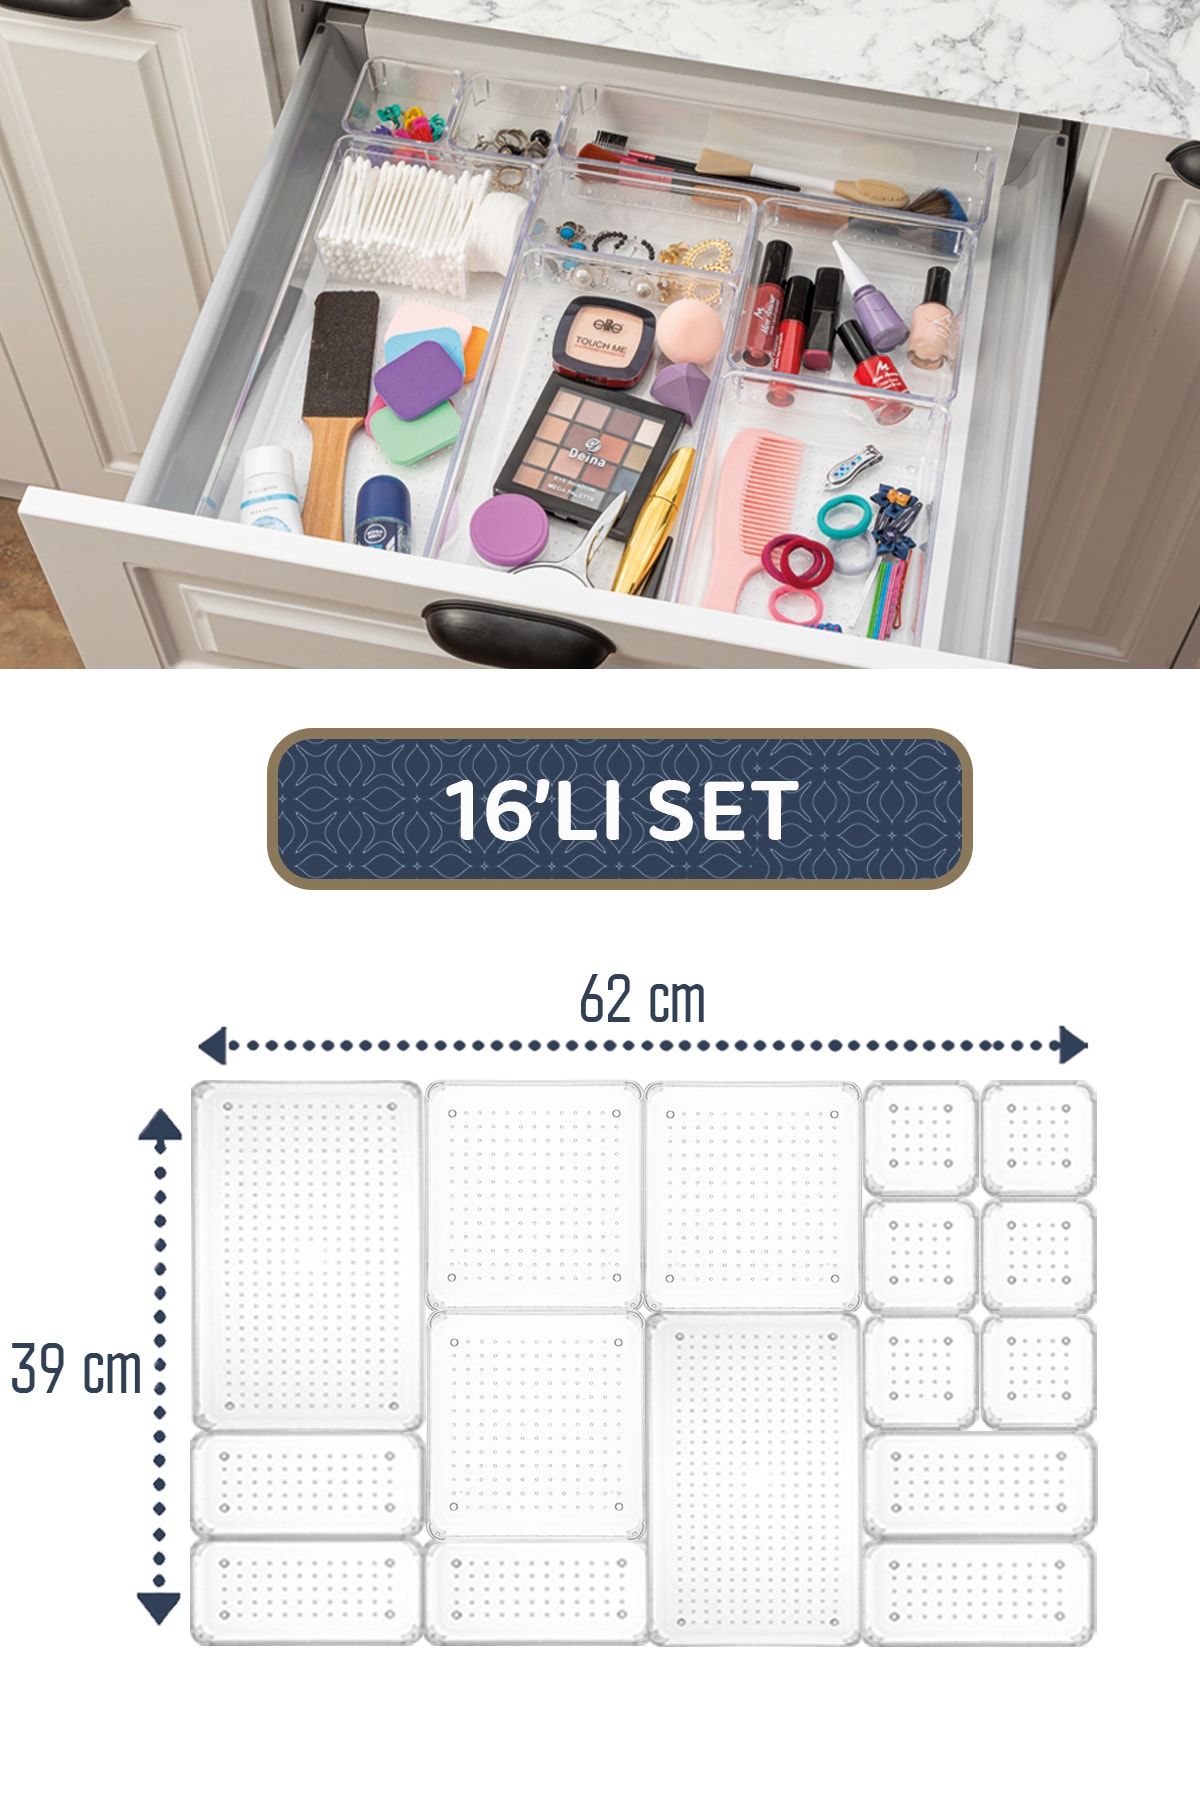 Meleni Home 16'lı Modüler Set Çekmece İçi Düzenleyici - Makyaj Takı Aksesuar Organizer - Dolap İçi Düzenleyici